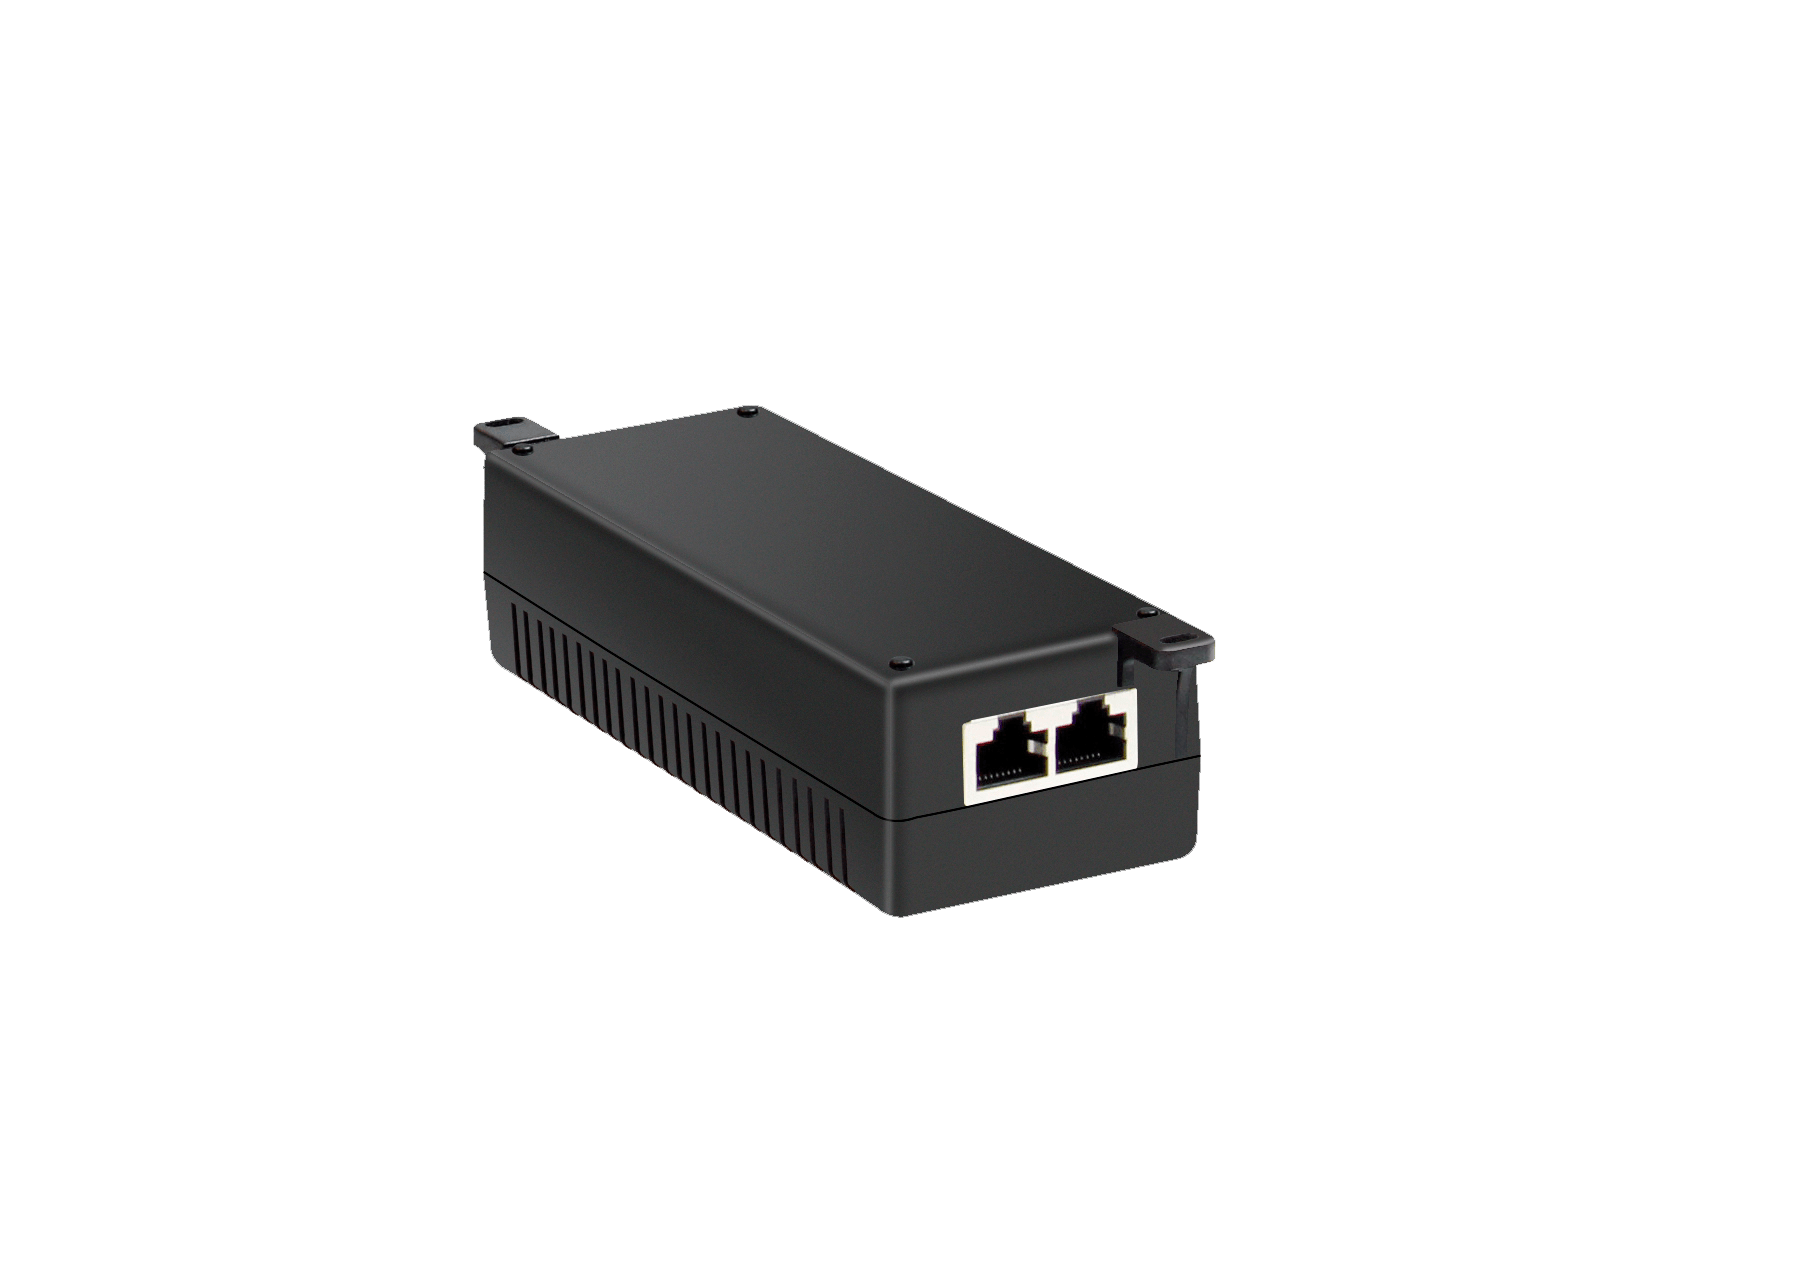 LBH3050A, Commutateur Ethernet industriel 10/100 Mo/s - non géré